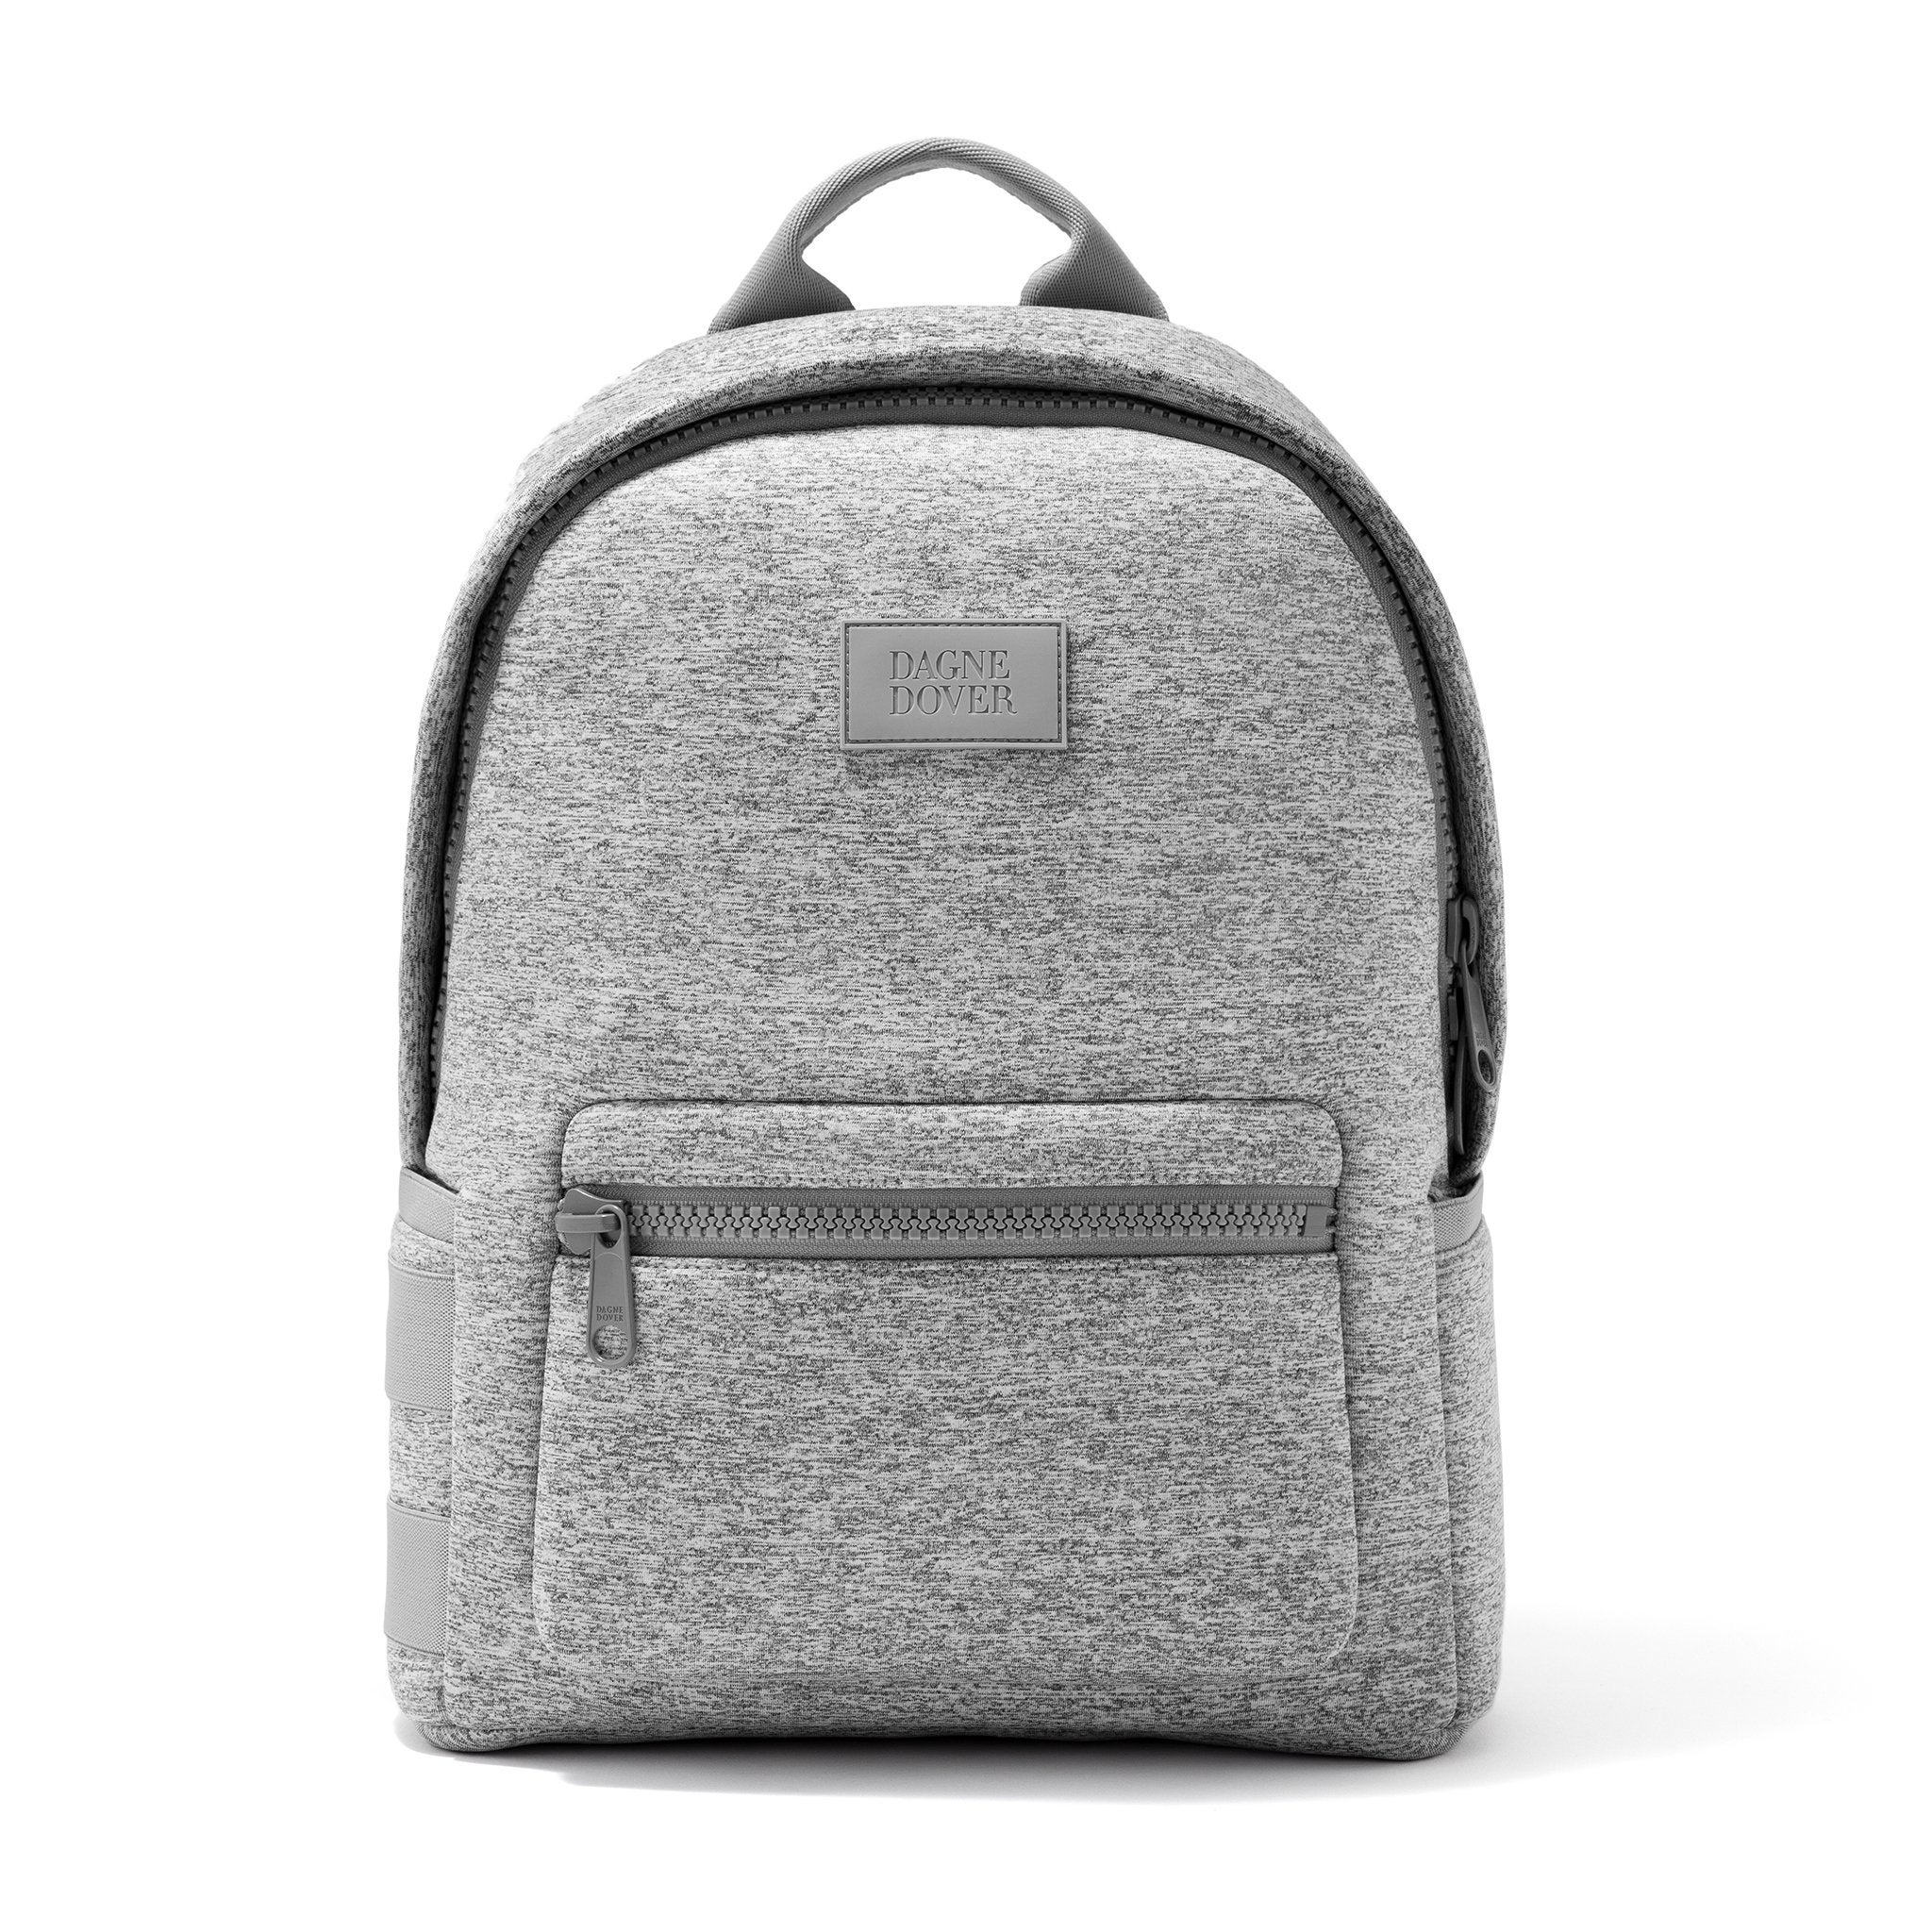 Dagne Dover + Dakota Backpack – Sample Sale